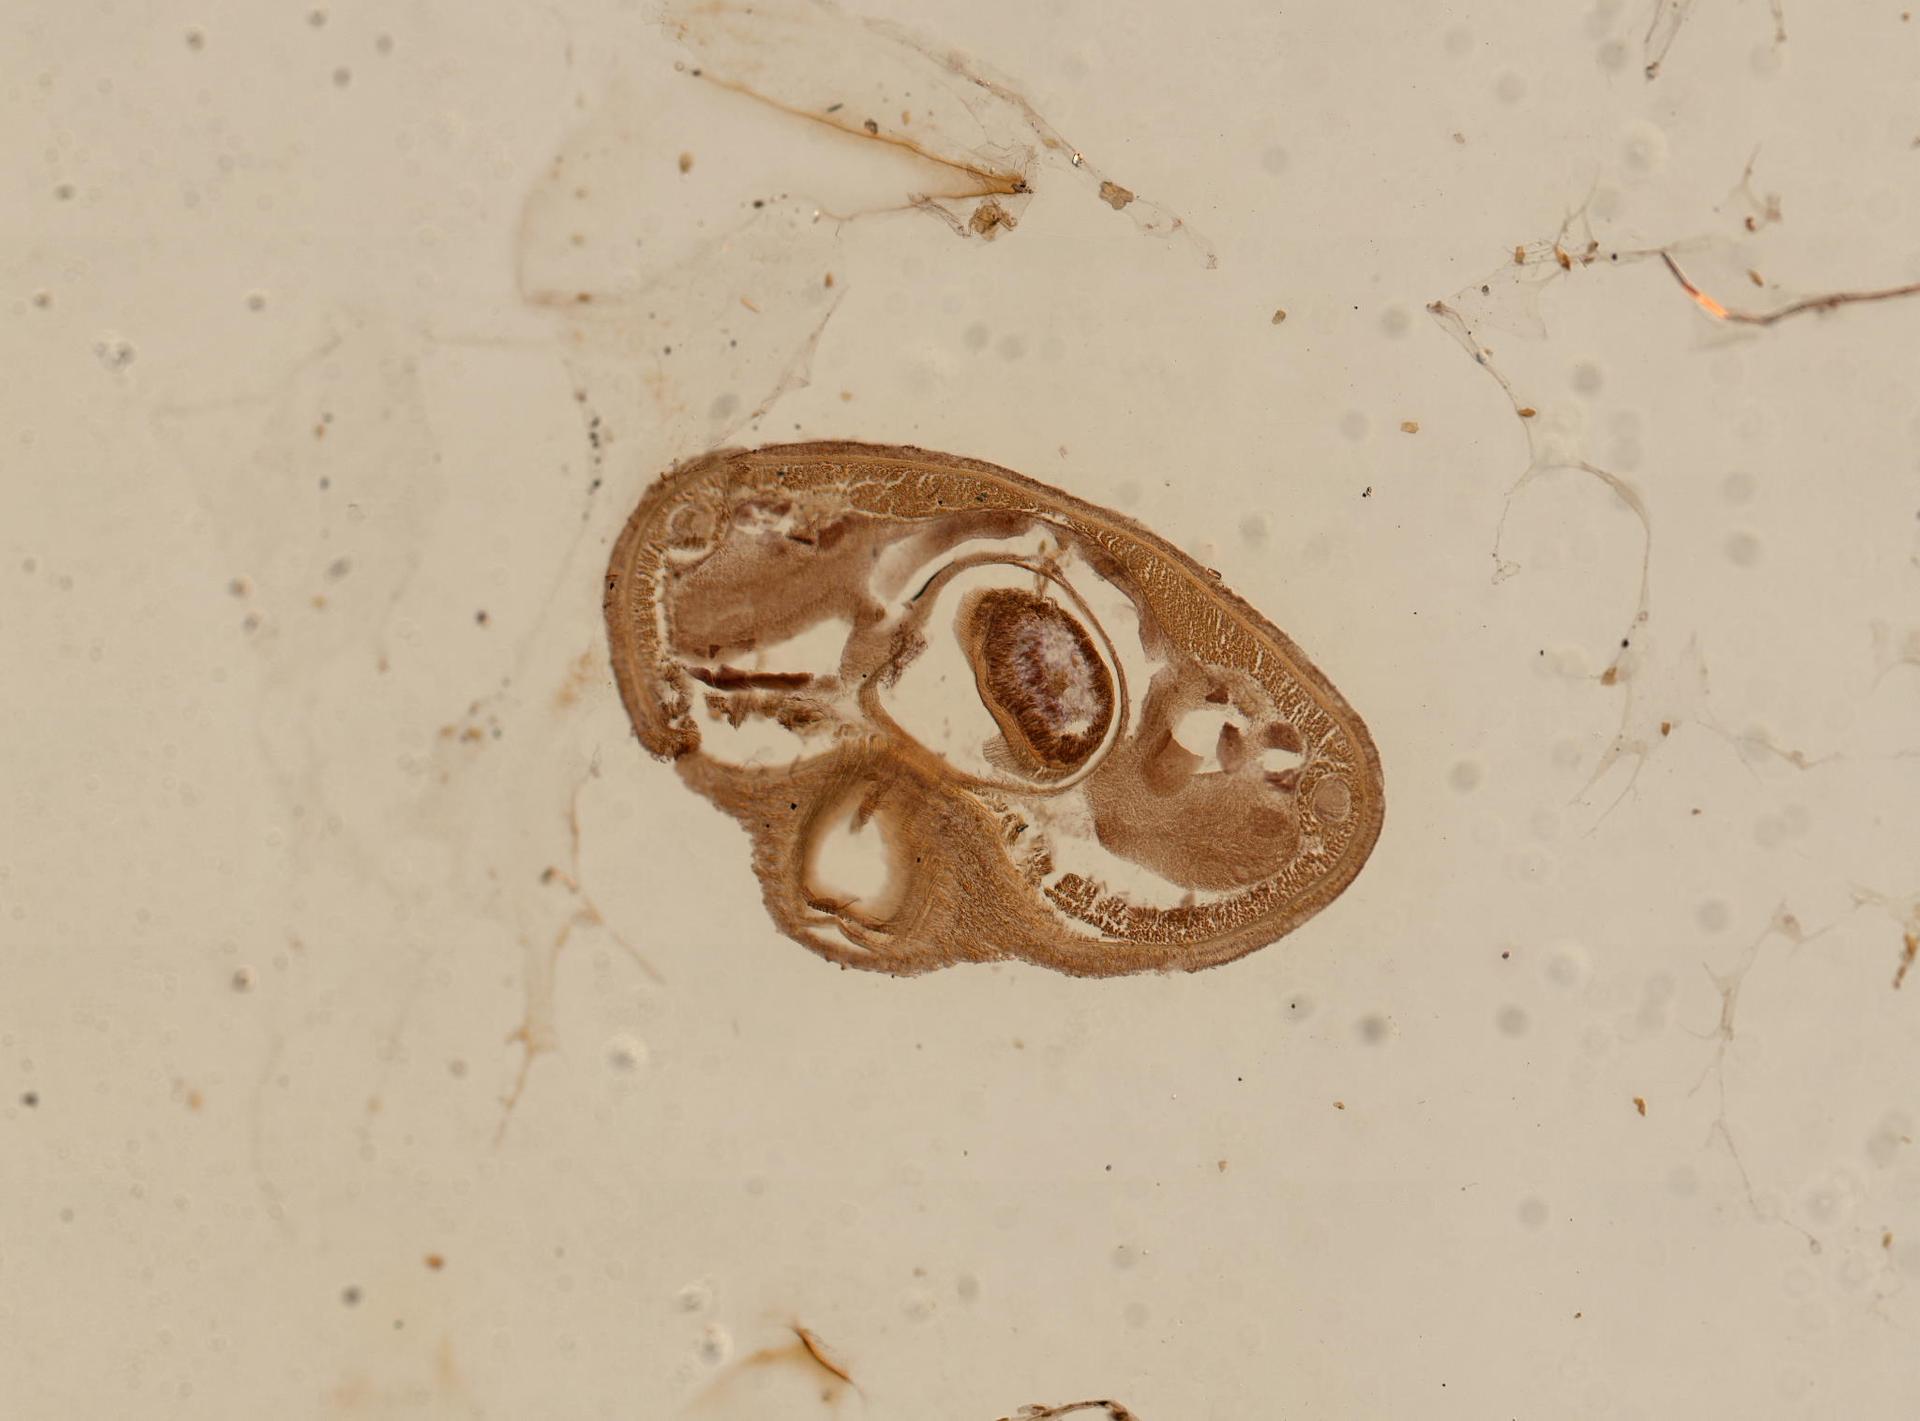 Carinoma mutabilis image